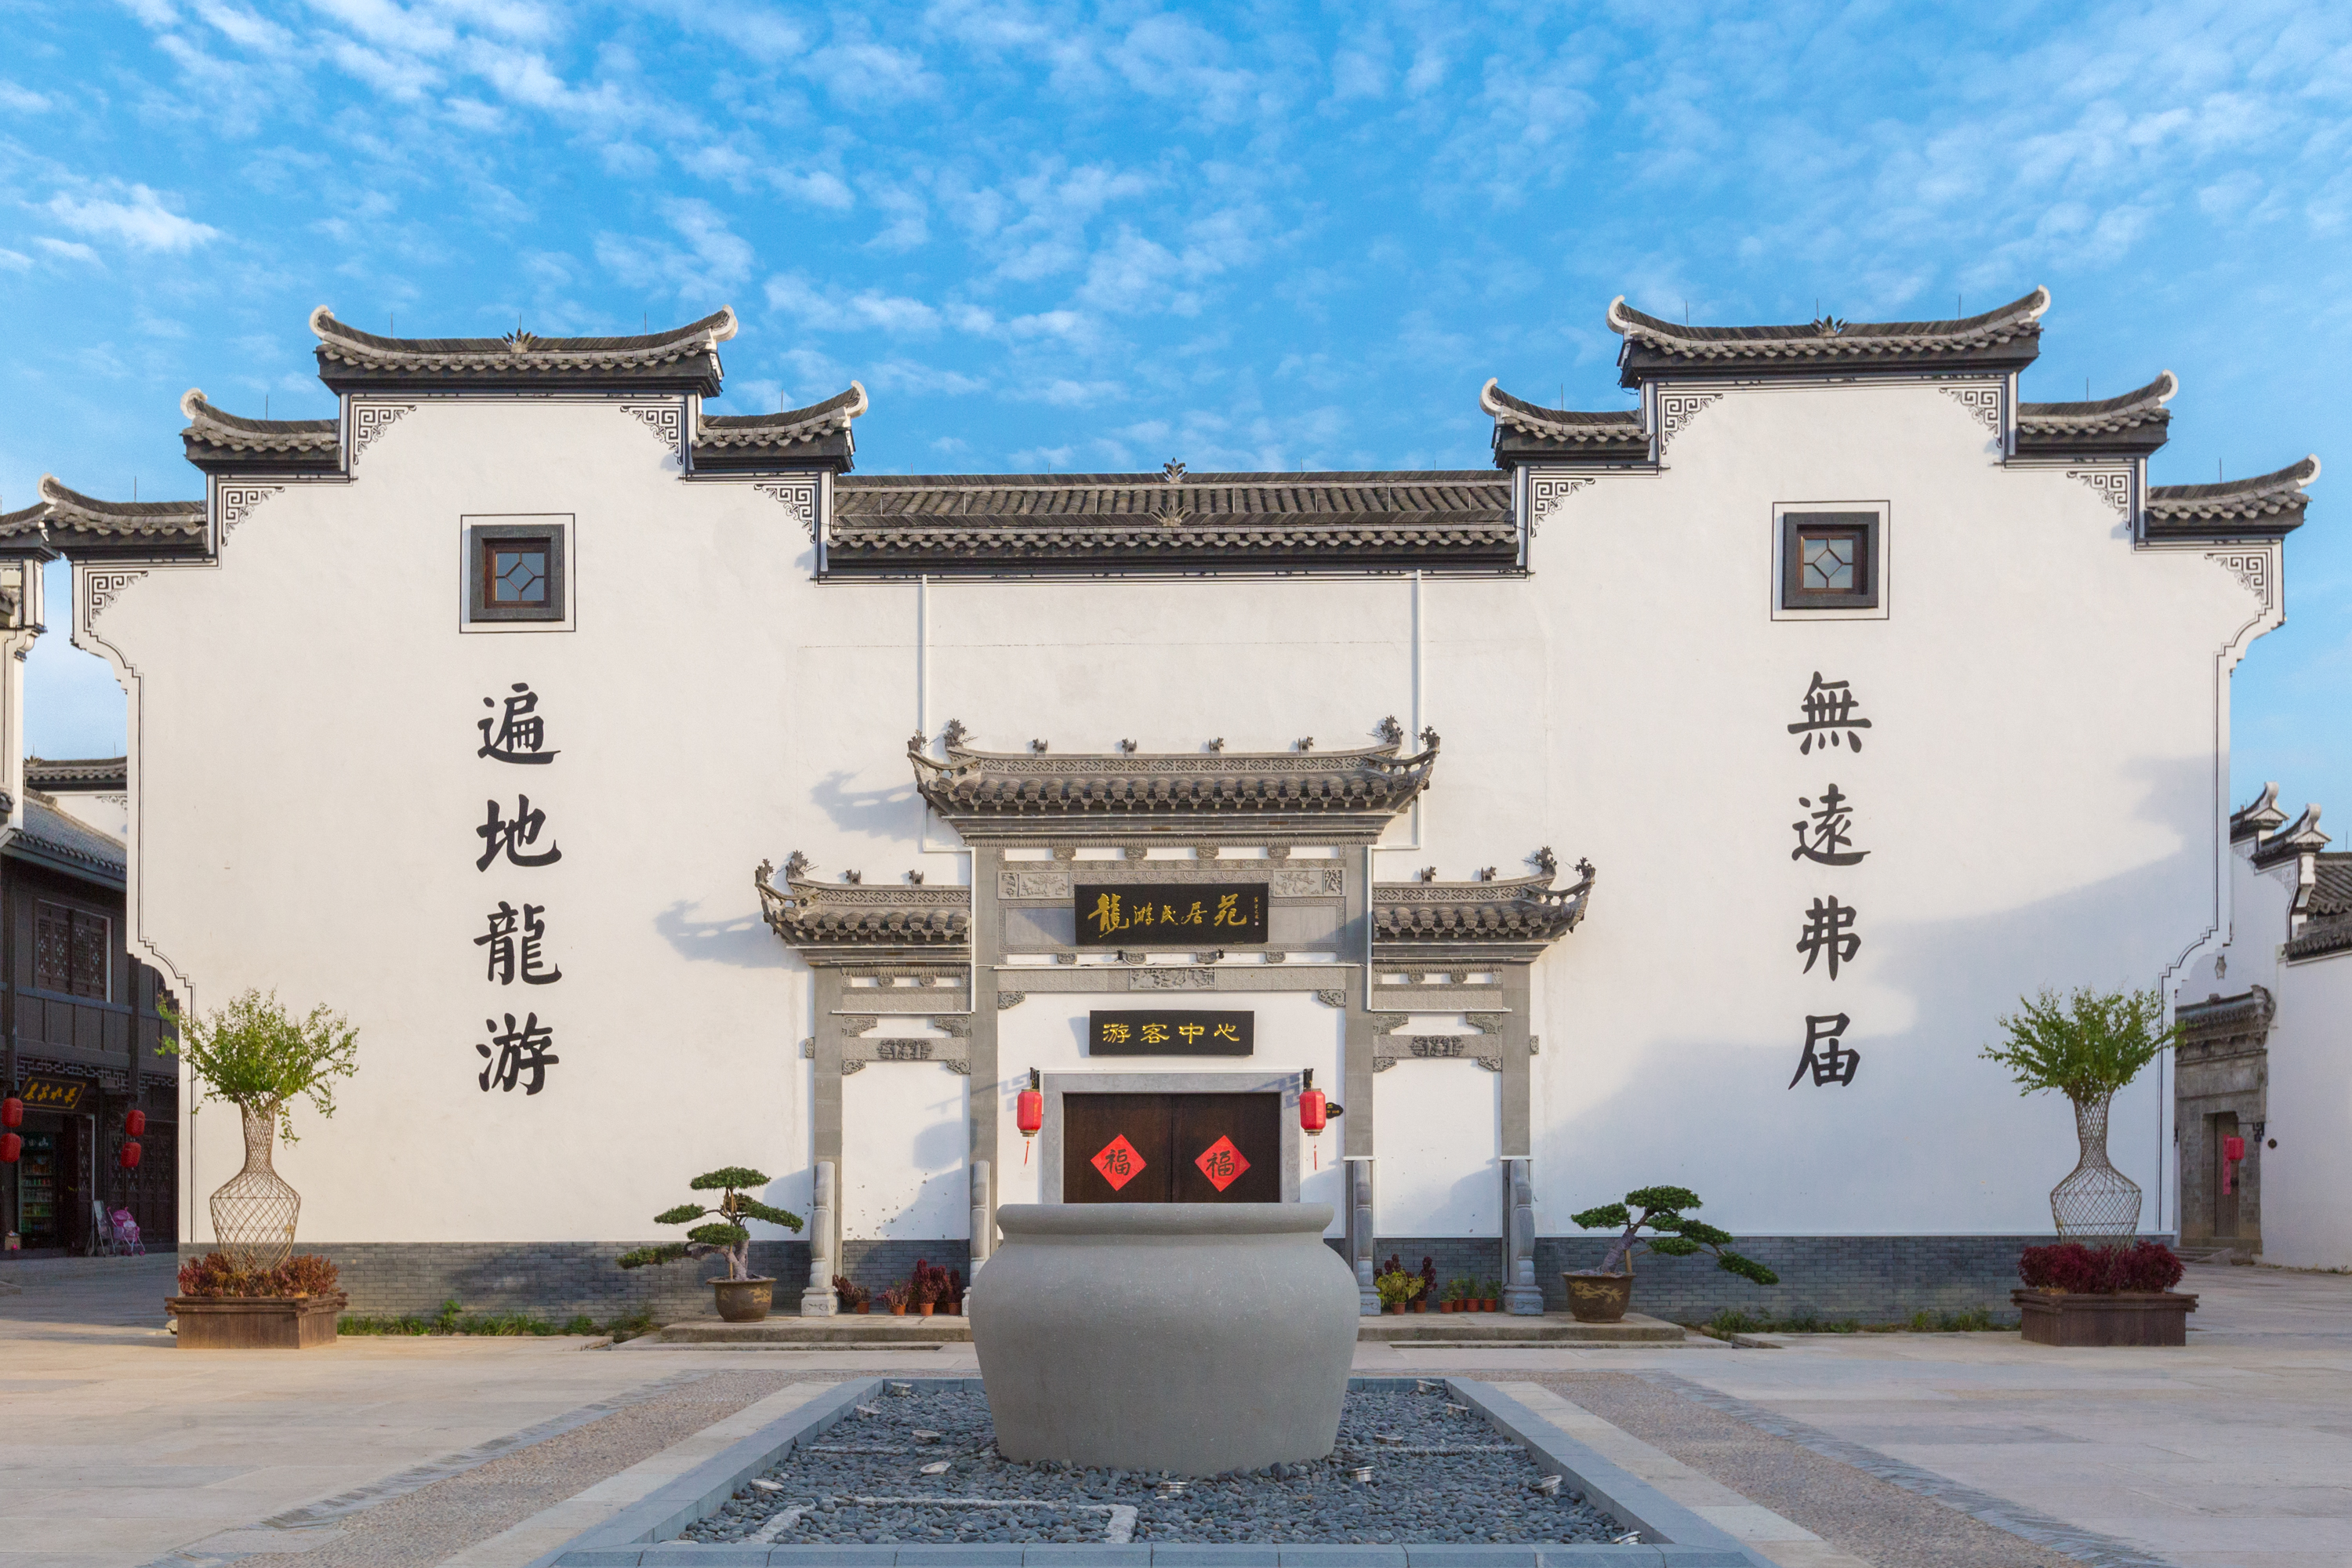 隐藏在浙江西部的徽派建筑,是当地最富有的地方?